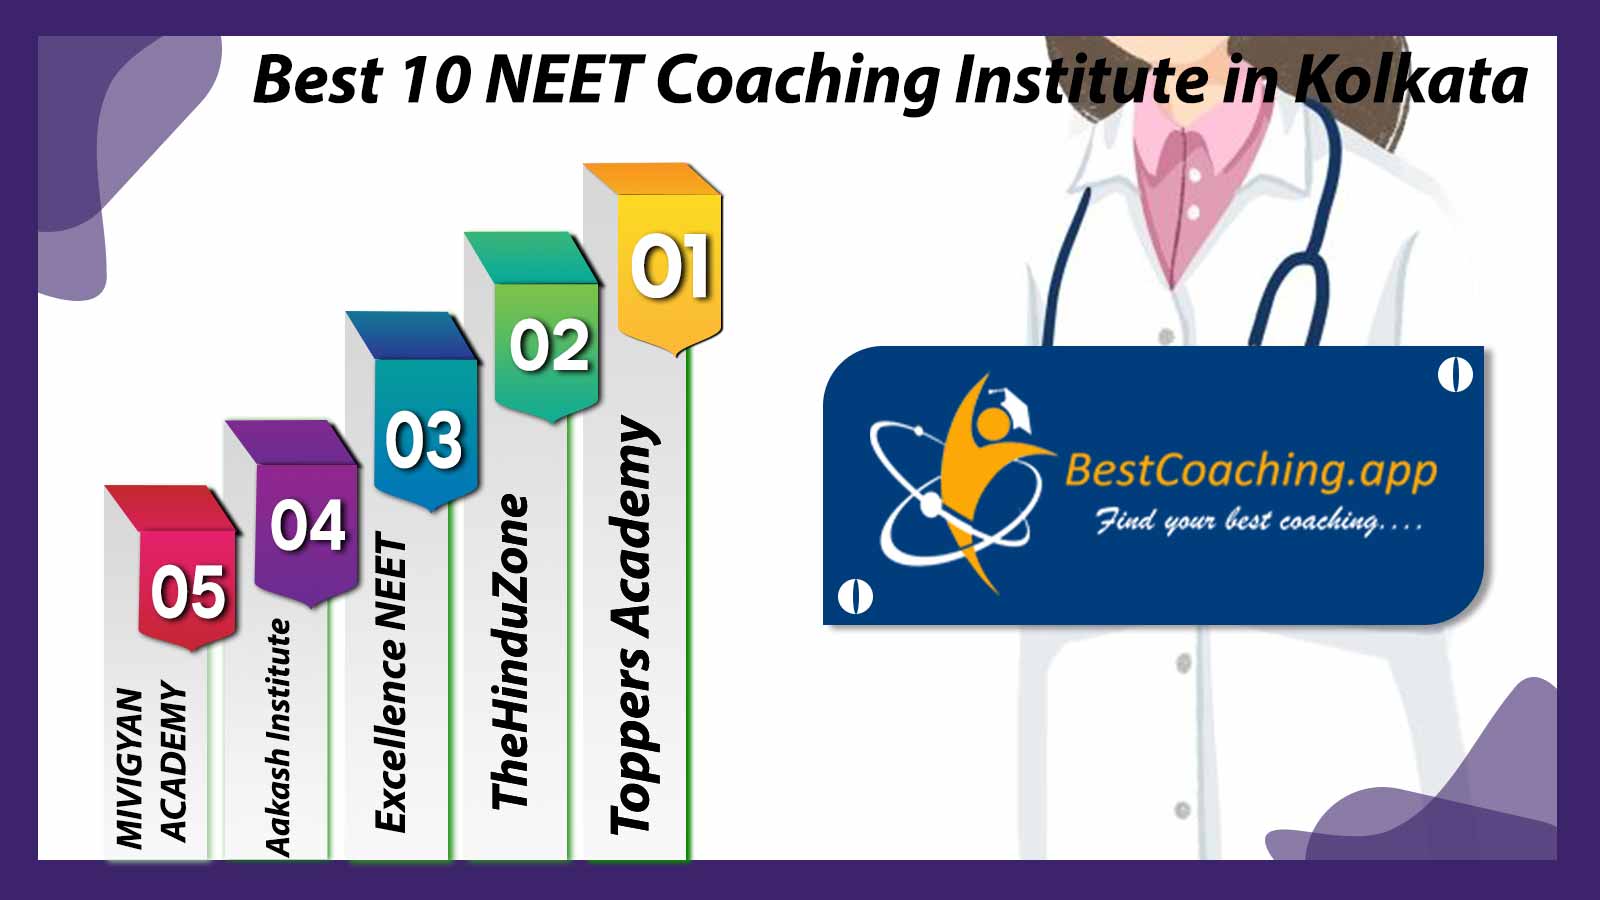 Best 10 NEET Coaching Institute in Kolkata